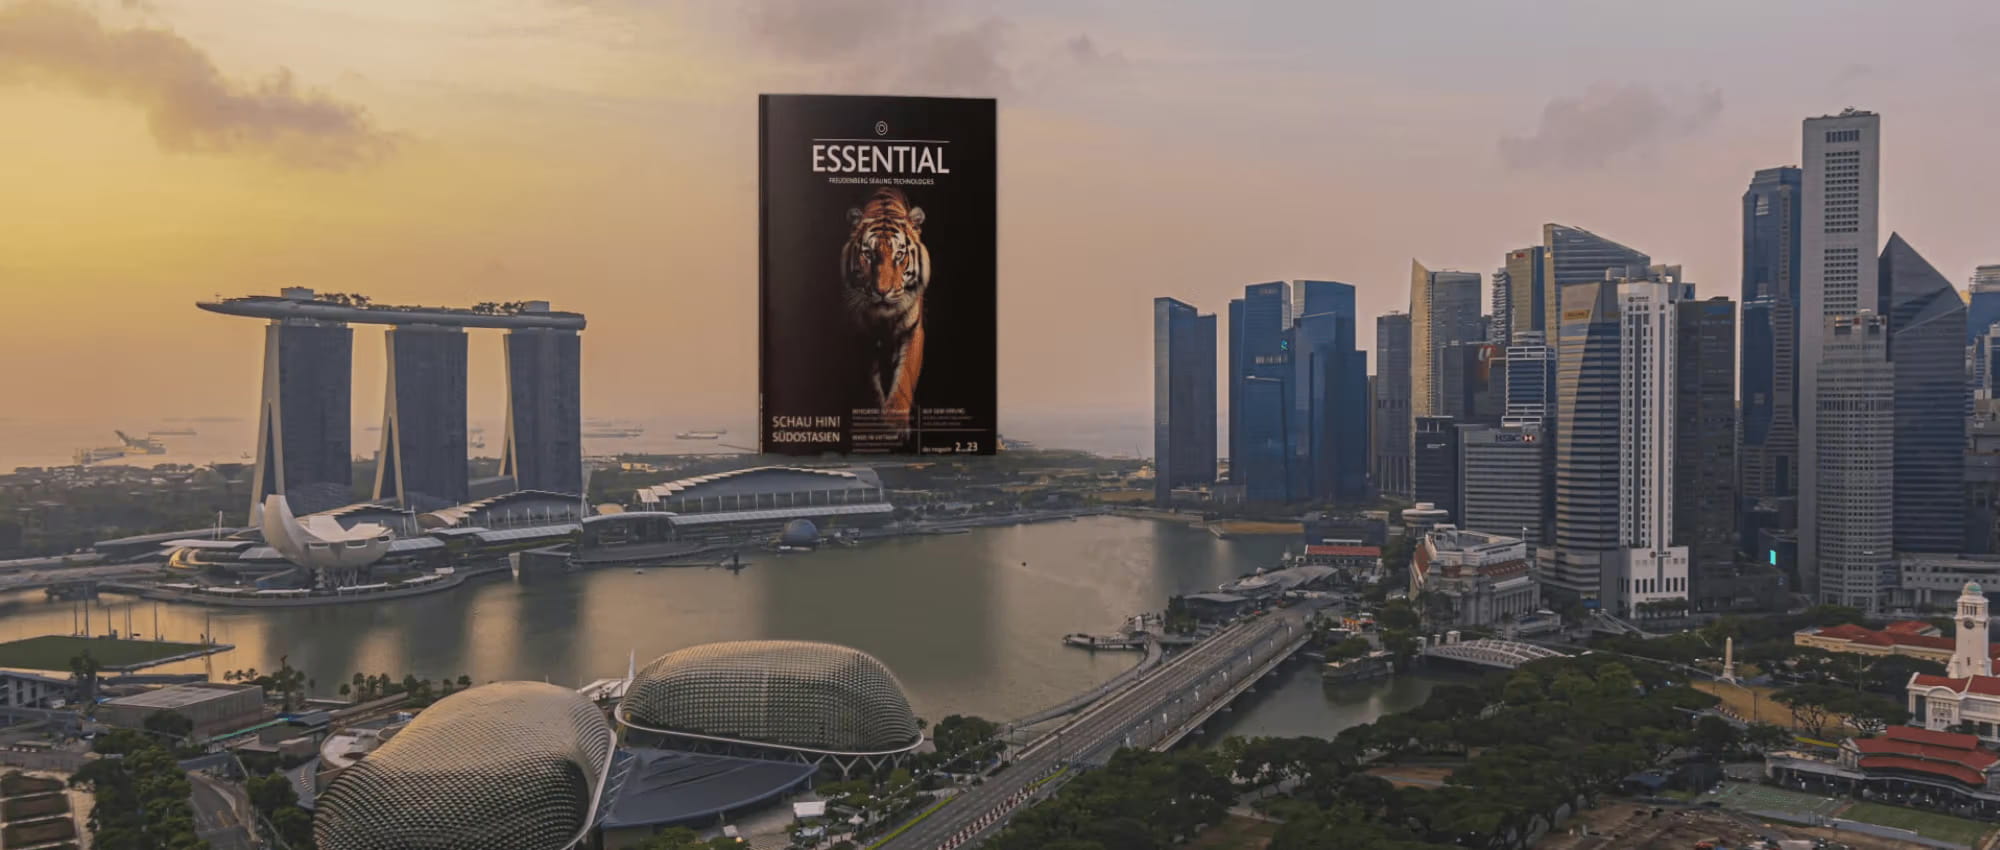 Singapur Skyline mit ESSENTIAL Magazin am Horizont